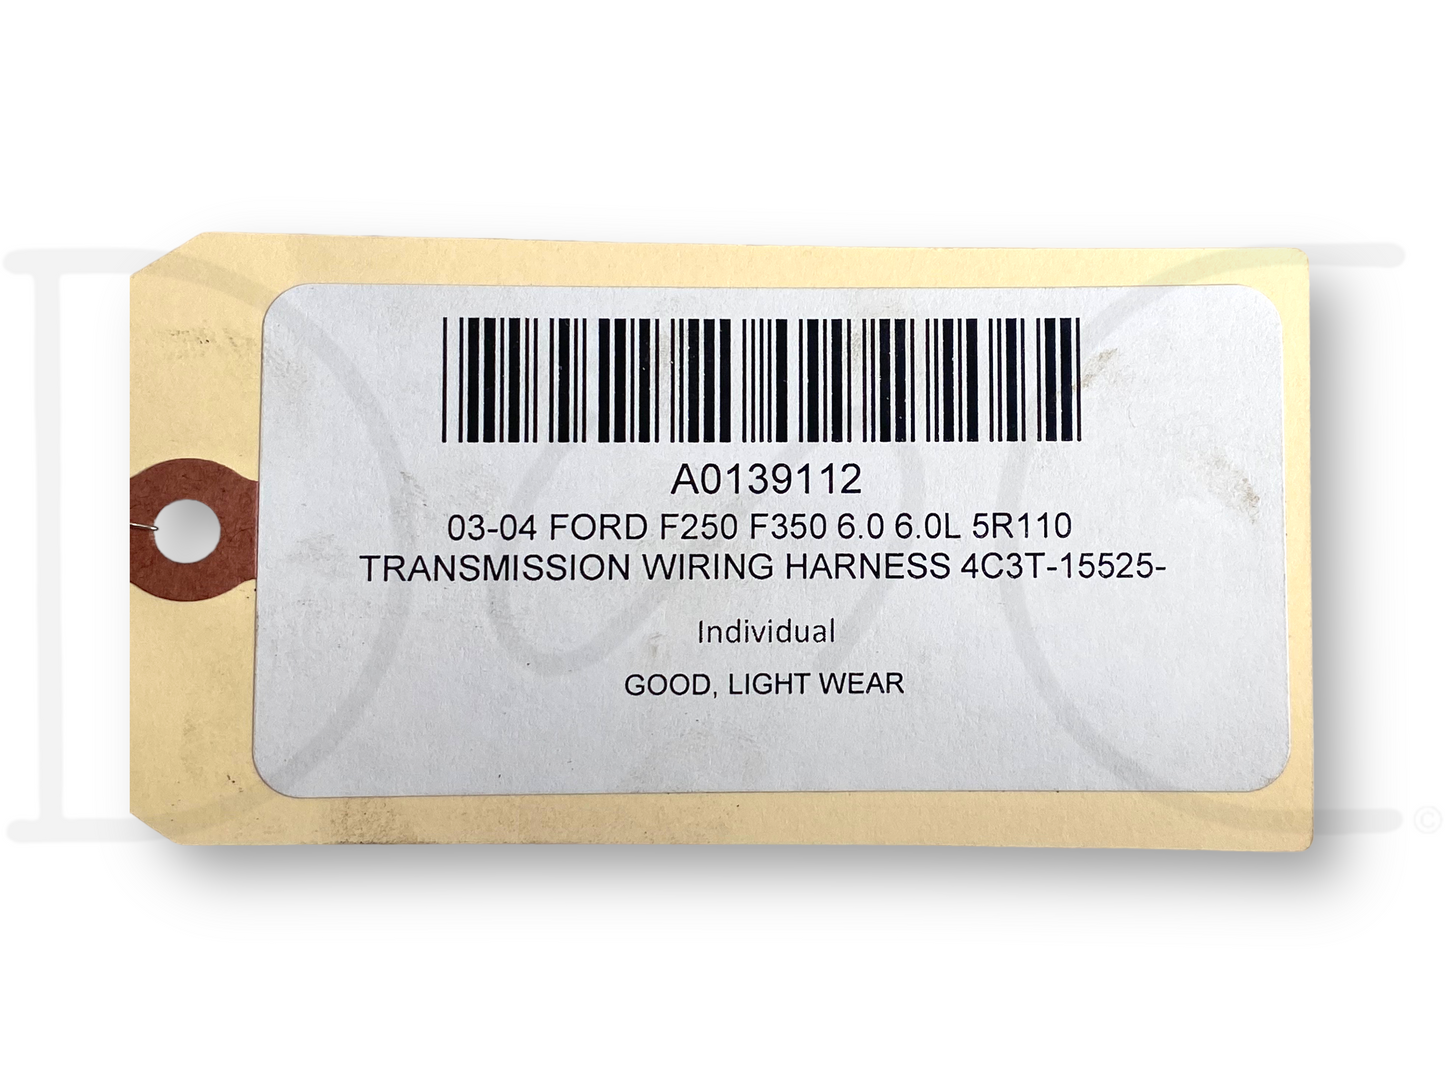 03-04 Ford F250 F350 6.0 6.0L 5R110 Transmission Wiring Harness 4C3T-15525-P260G